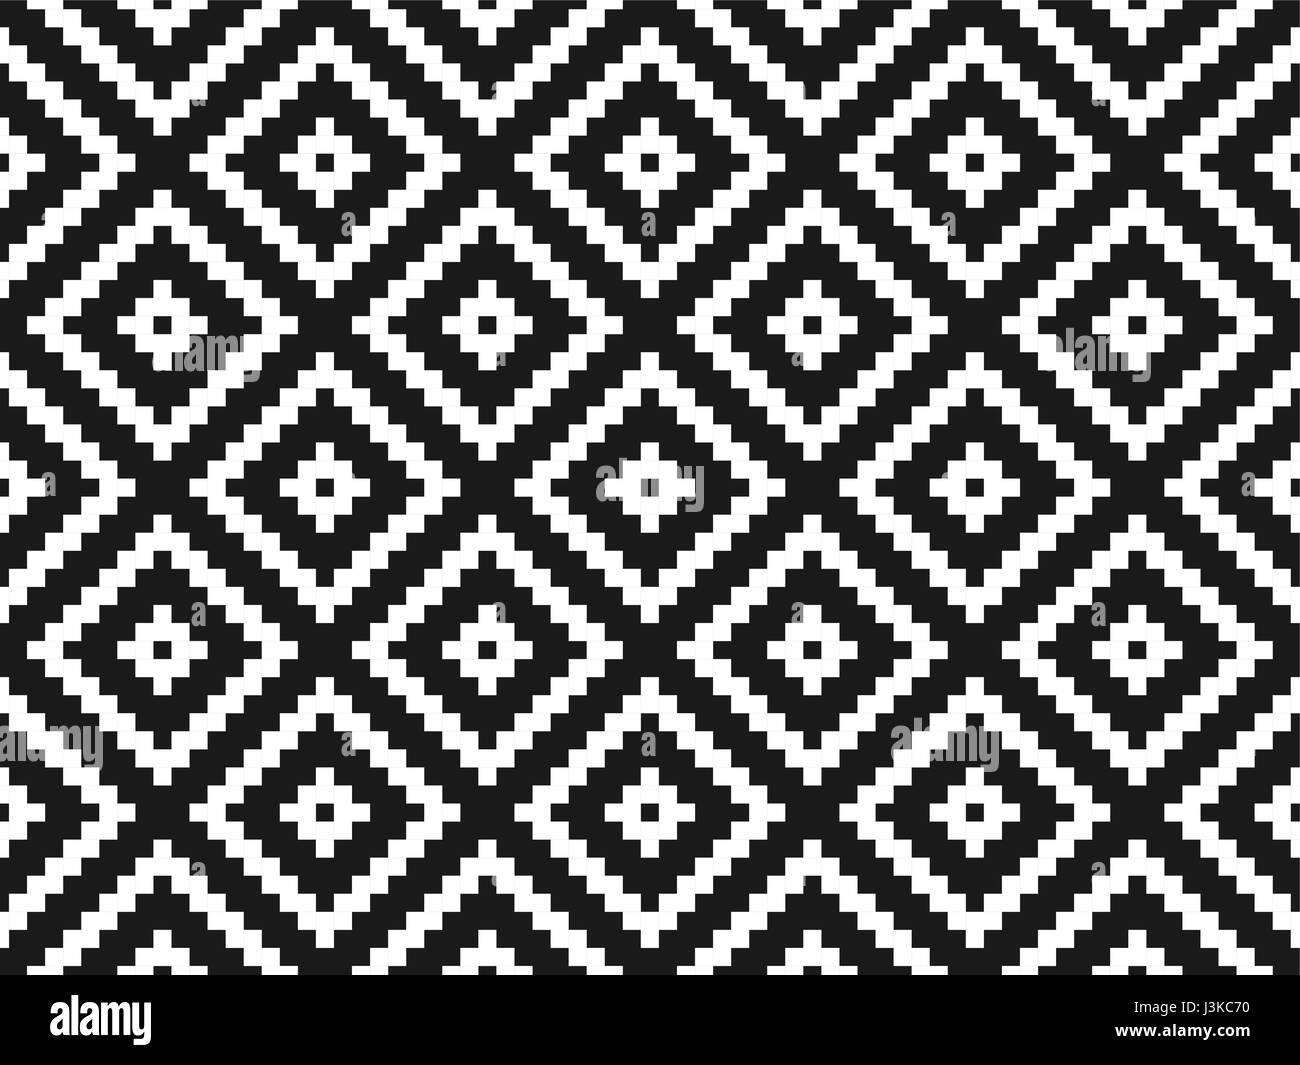 Nahtlose moderne stilvolle Textur und Muster. Weiße geometrischen Fliesen mit gepunkteten Raute auf einem schwarzen Hintergrund zu wiederholen. Vektor-Illustration. Stock Vektor